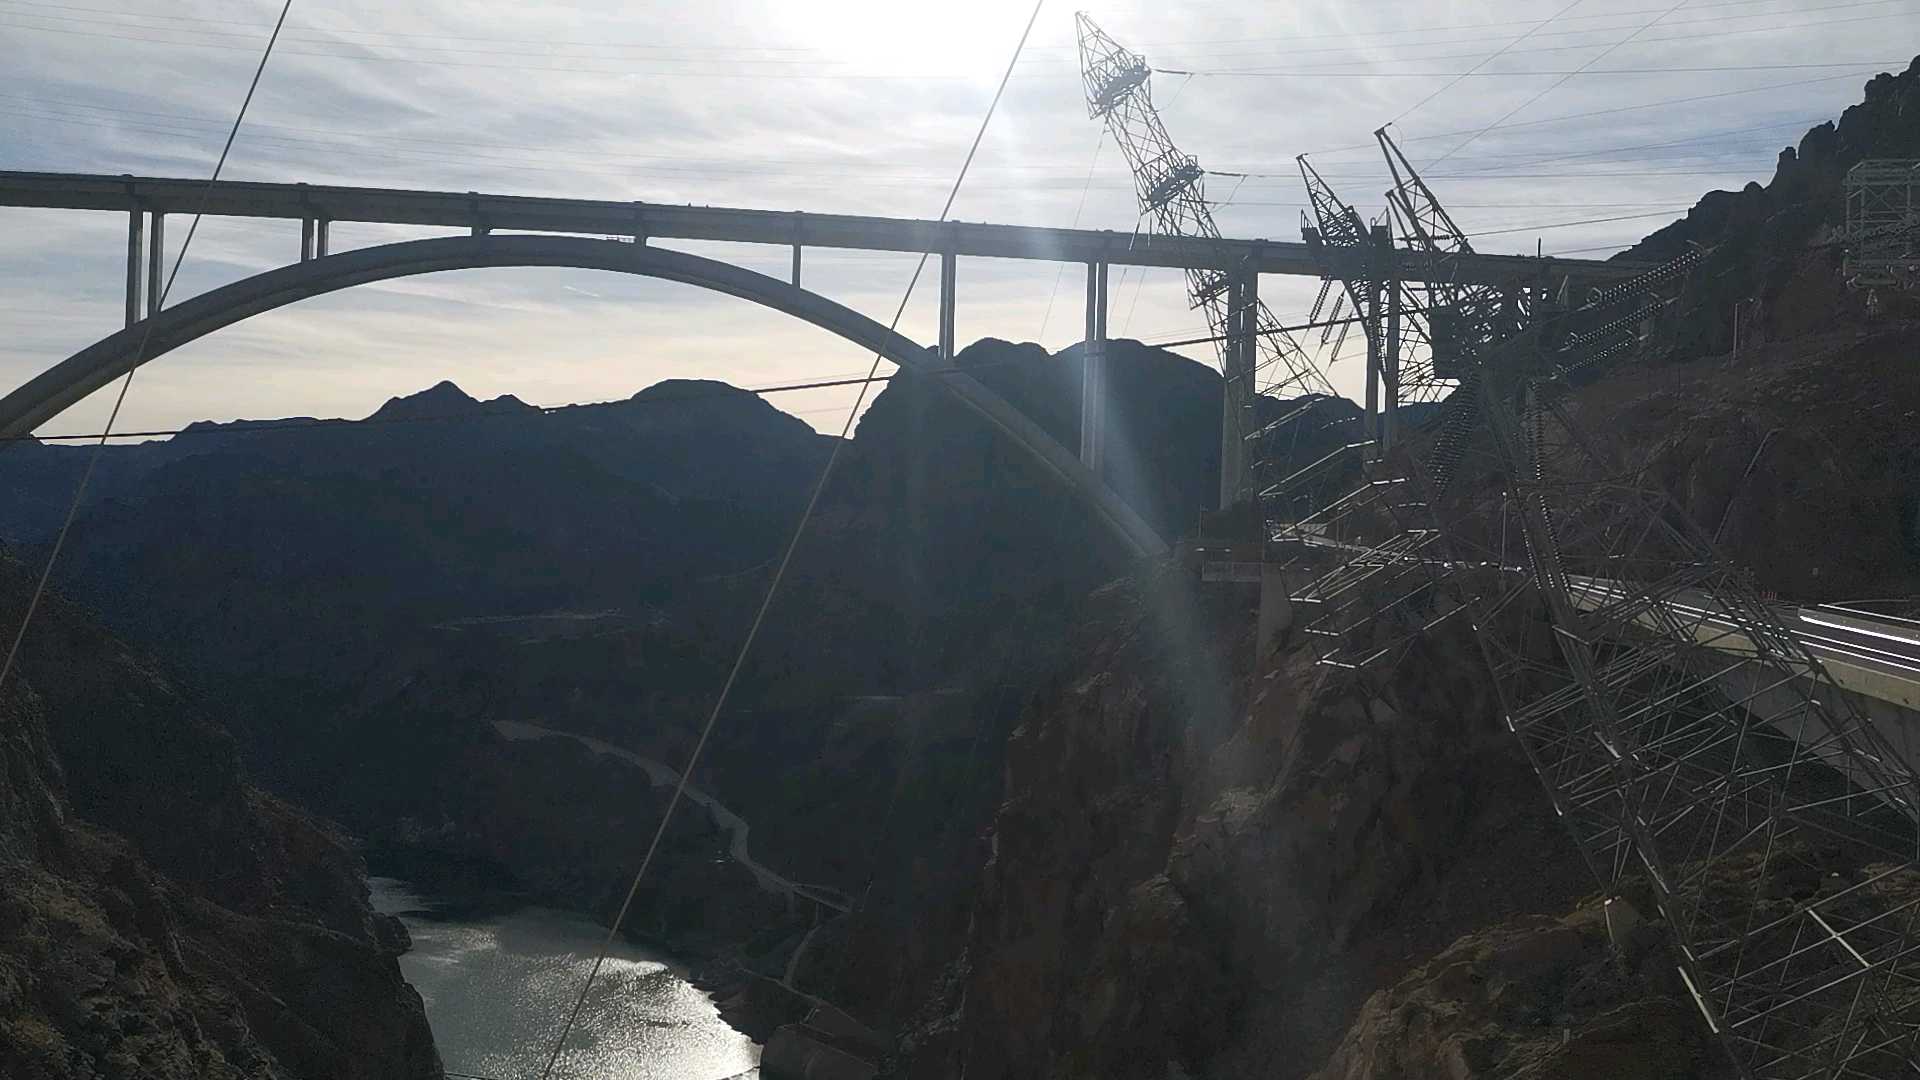 胡佛大坝。全世界最大的水利工程项目